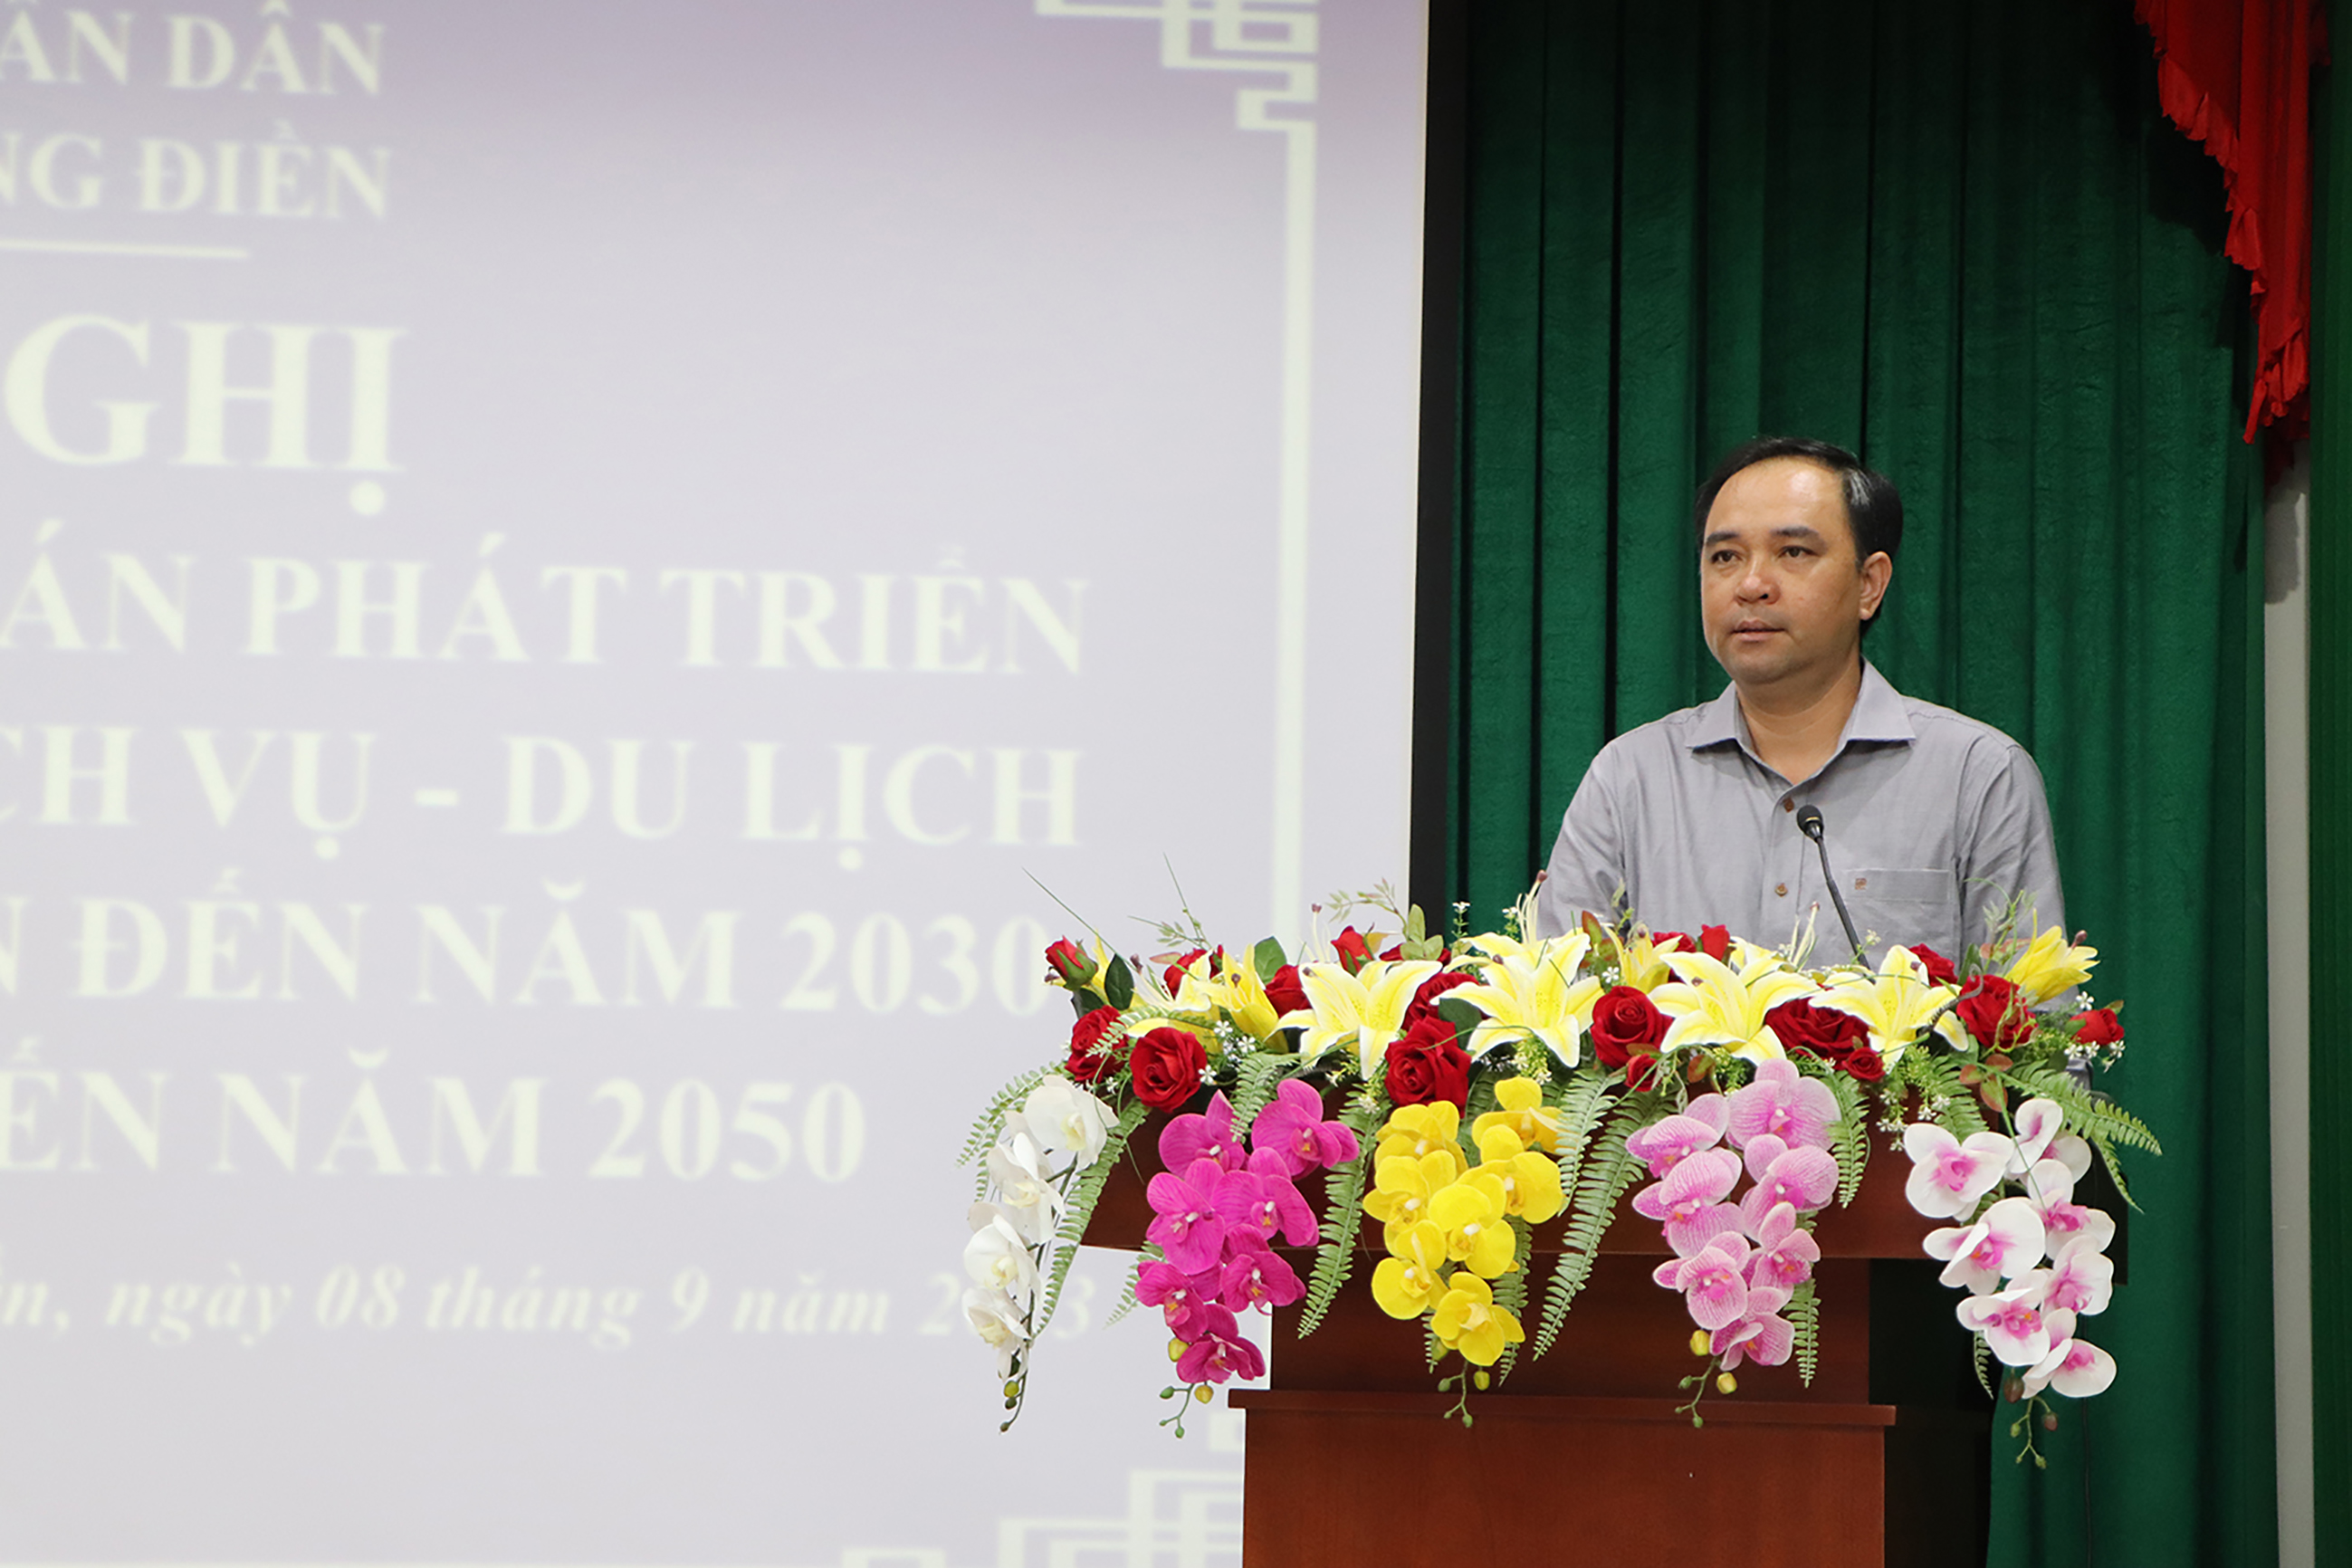 Phó Chủ tịch UBND huyện Long Điền Lê Hữu Hiền khẳng định, đề án là văn kiện quan trọng giúp định hướng phát triển kinh tế-xã hội tại địa phương.